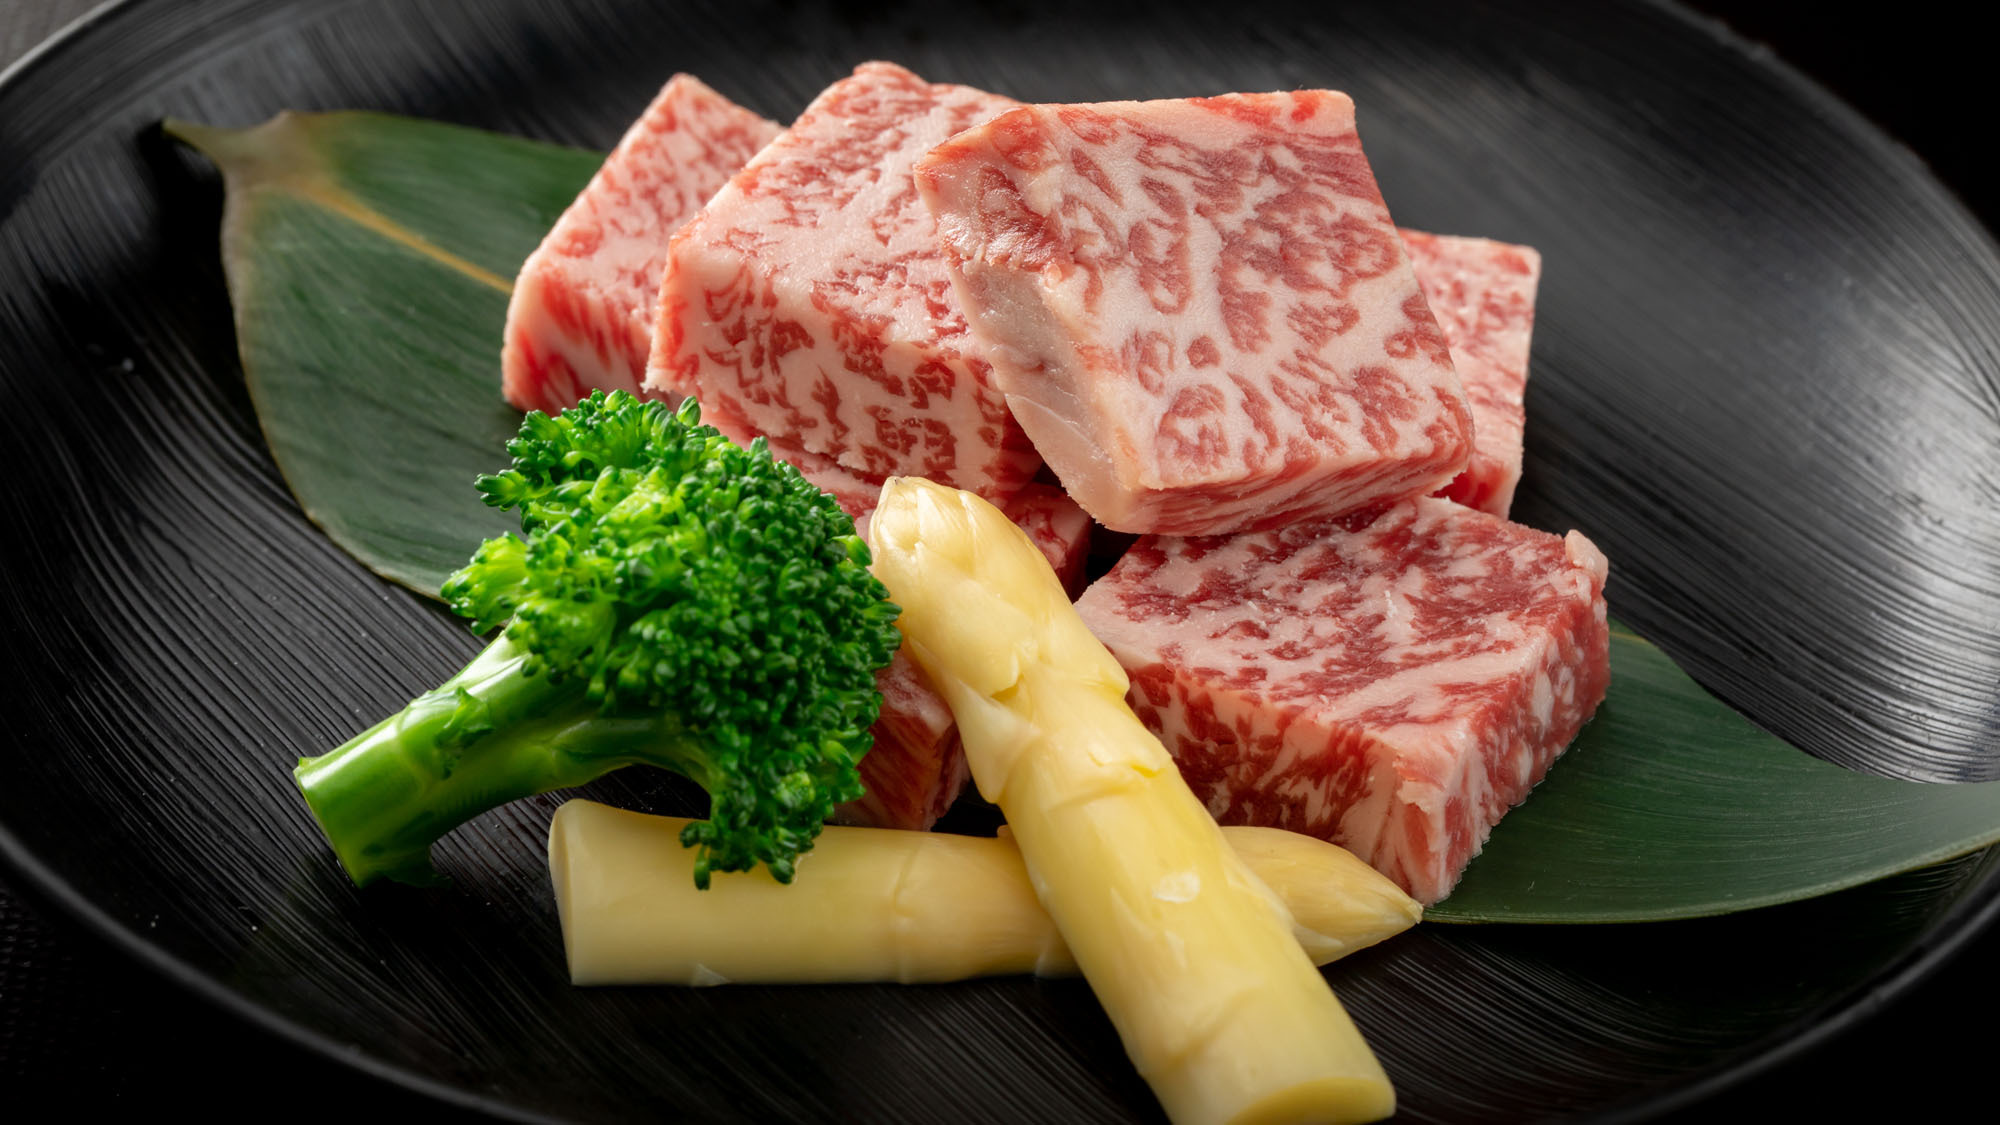 赤と白のコントラストの美しい和牛、千屋牛。和牛のルーツとも言える珍しいお肉をご賞味ください